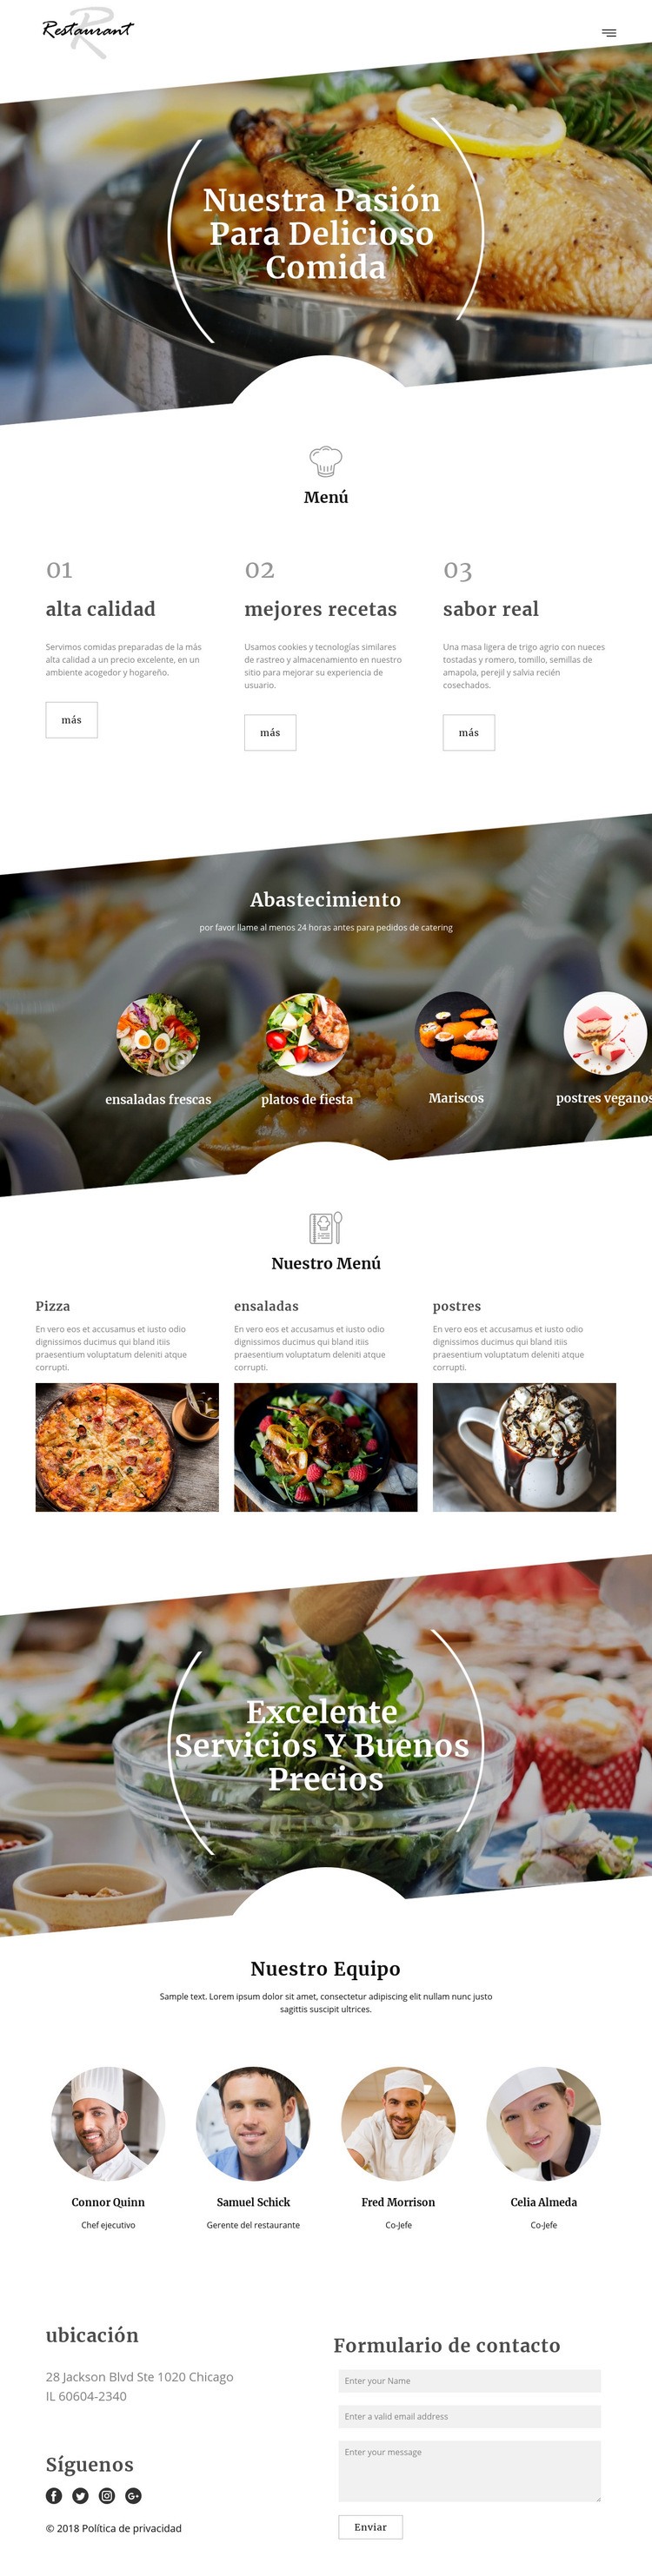 Recetas del chef ejecutivo Plantilla HTML5